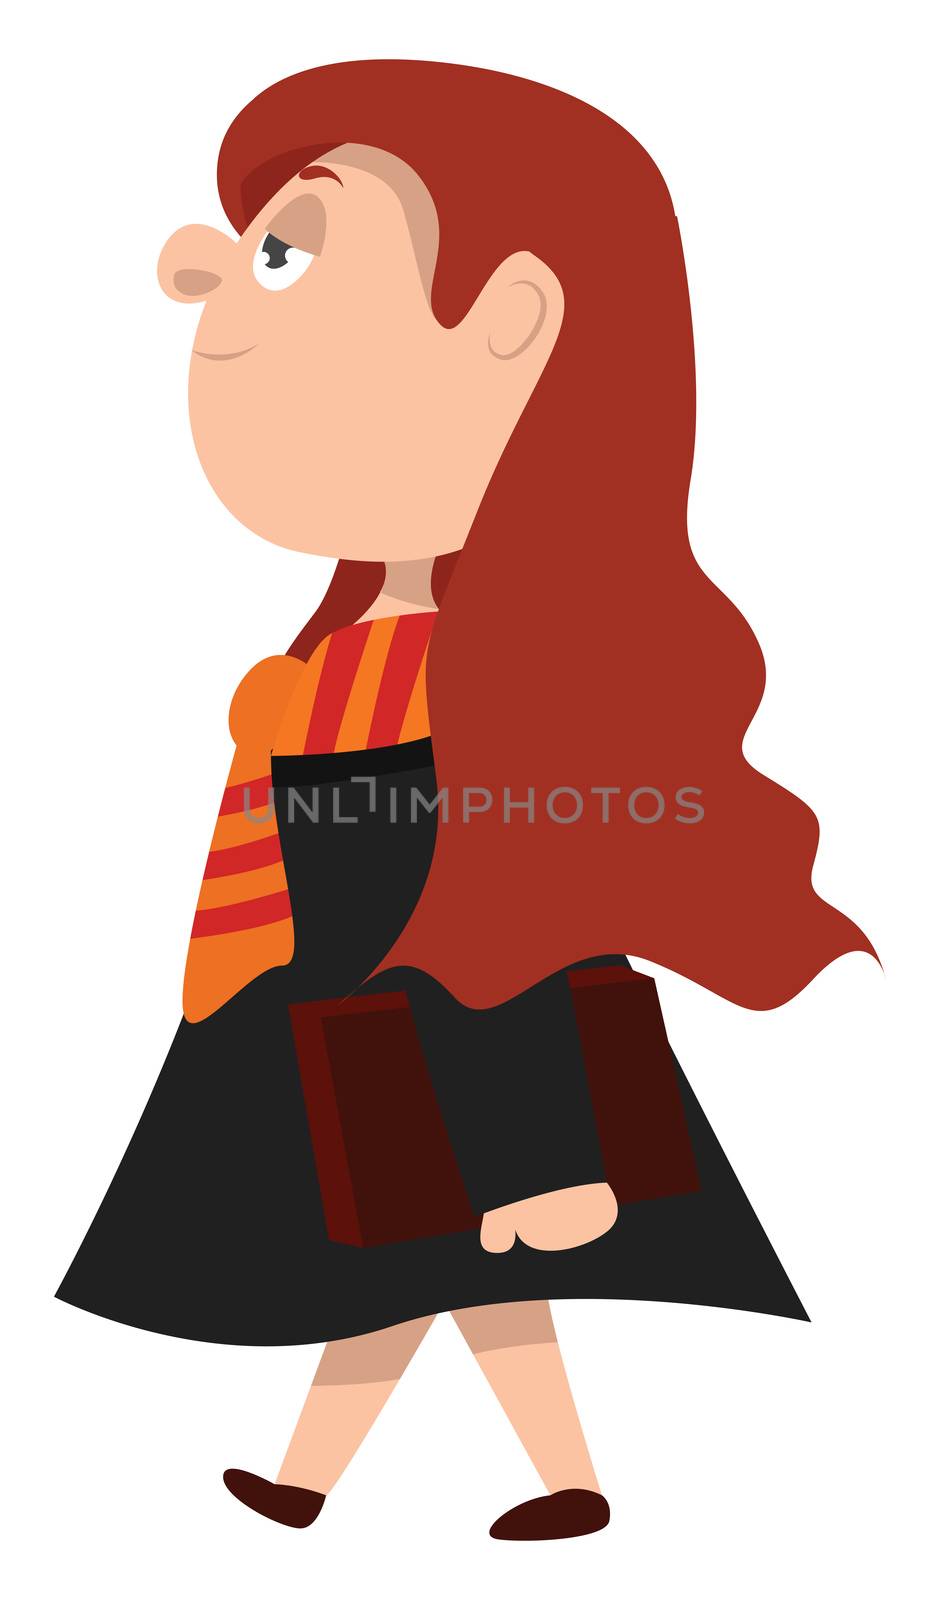 Hogwarts student , illustration, vector on white background by Morphart